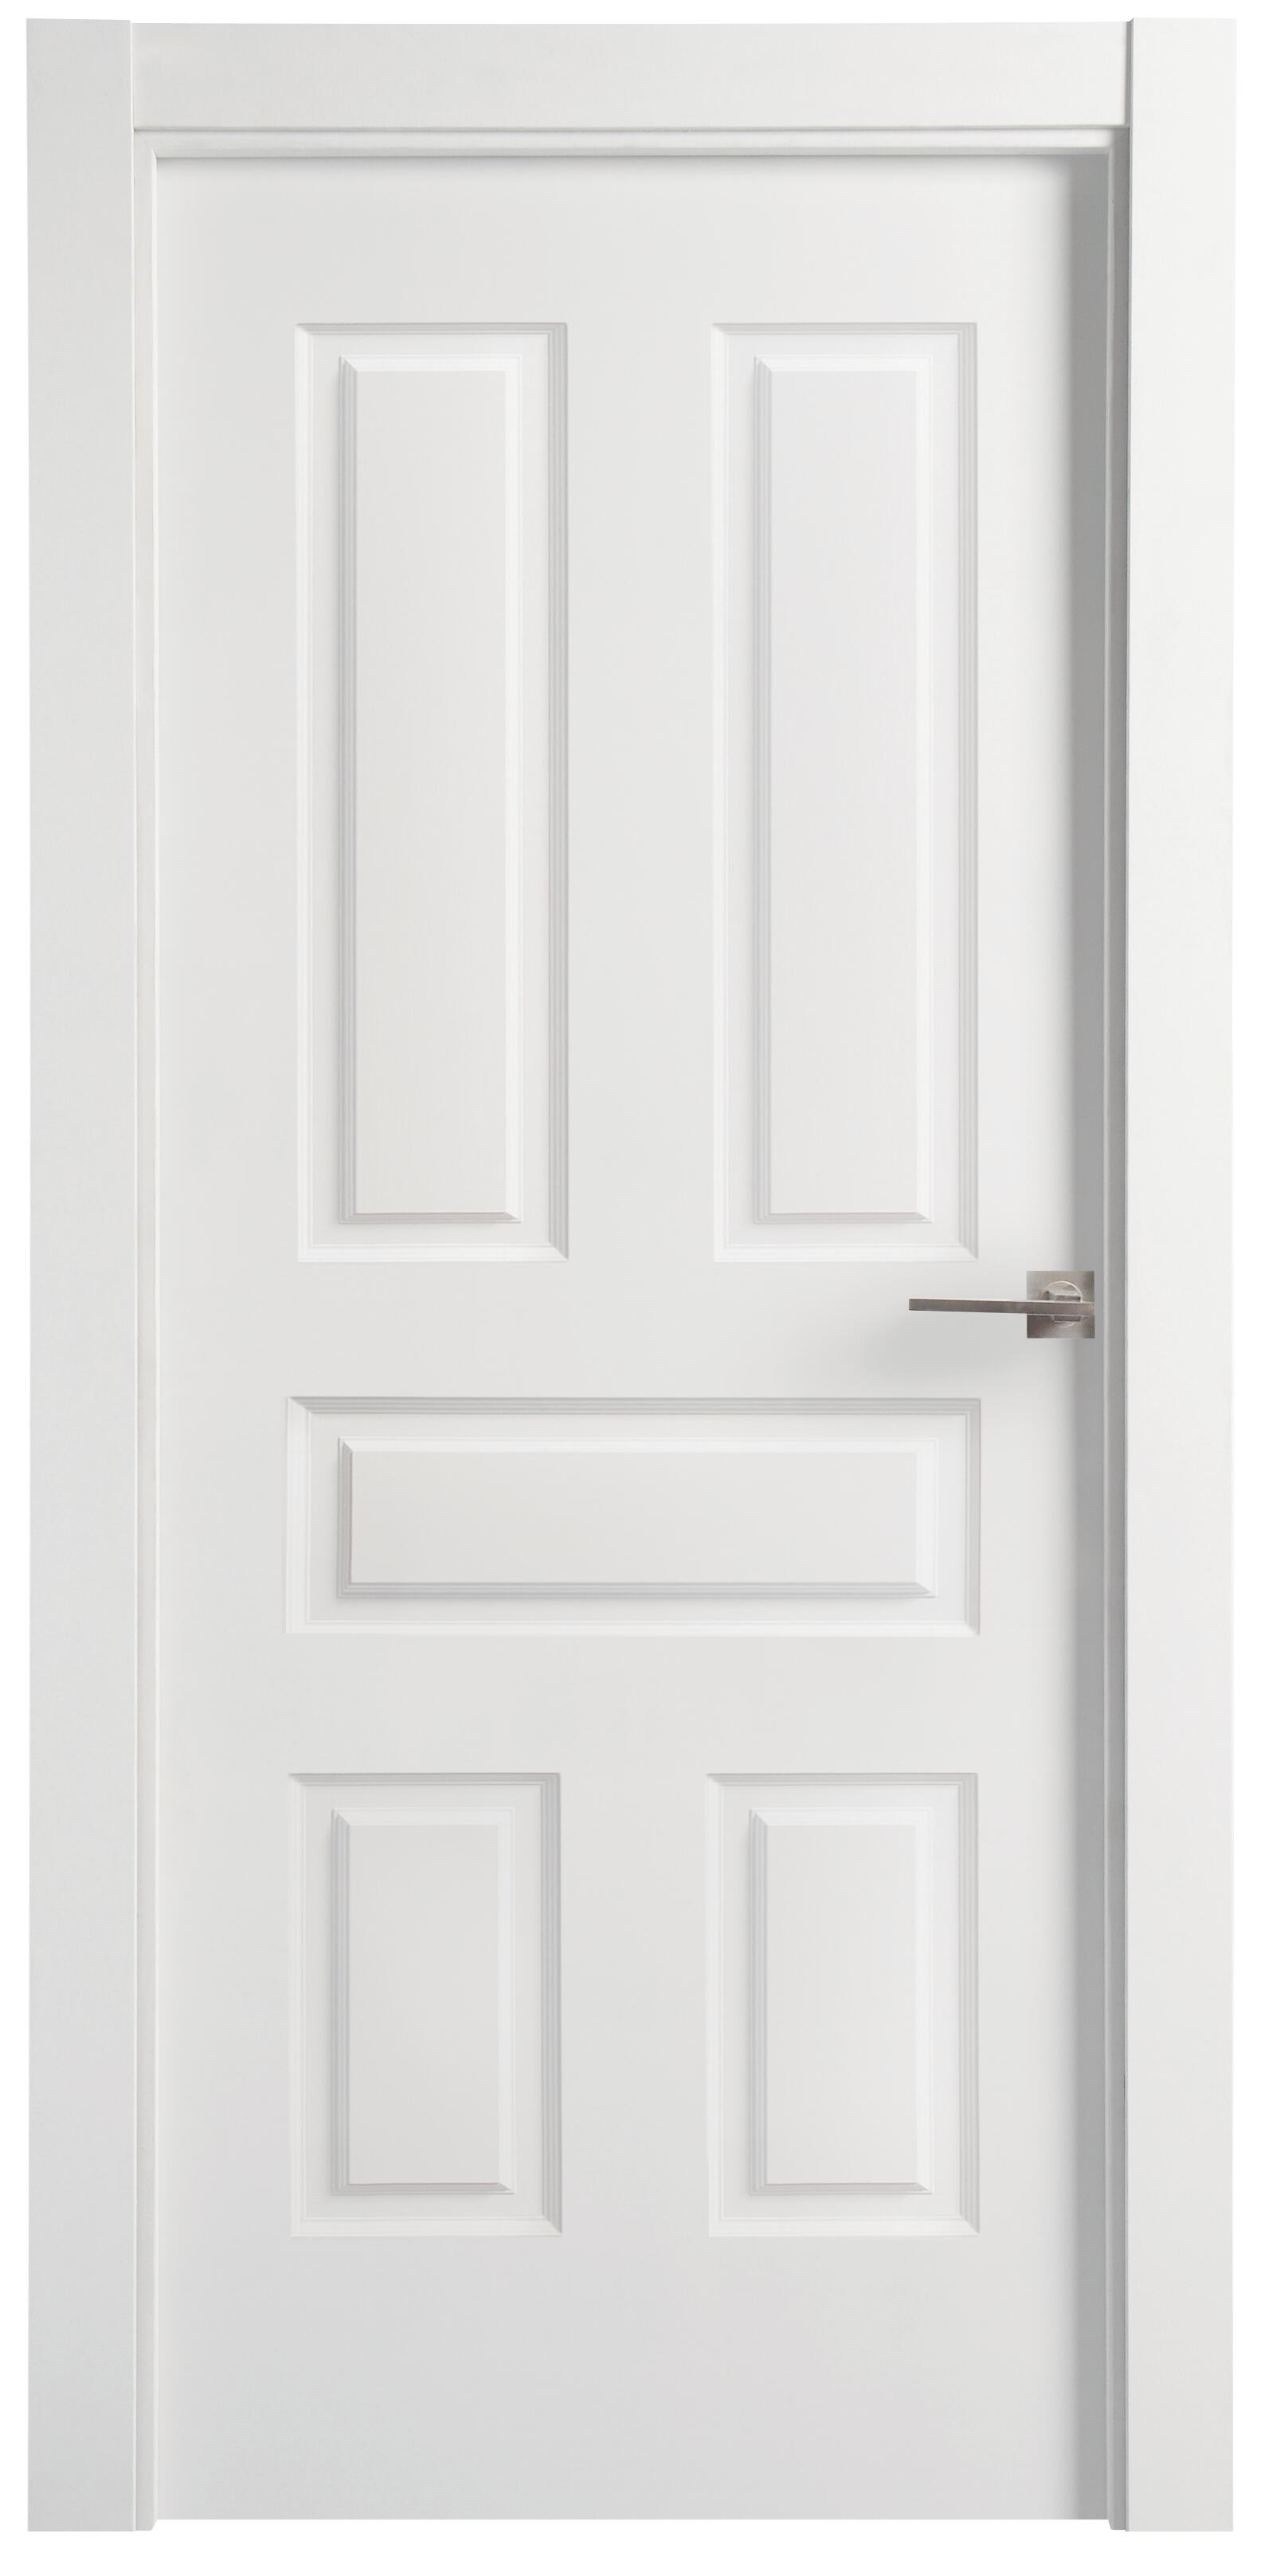 Puerta indiana plus blanco apertura izquierda de 11x72,5cm